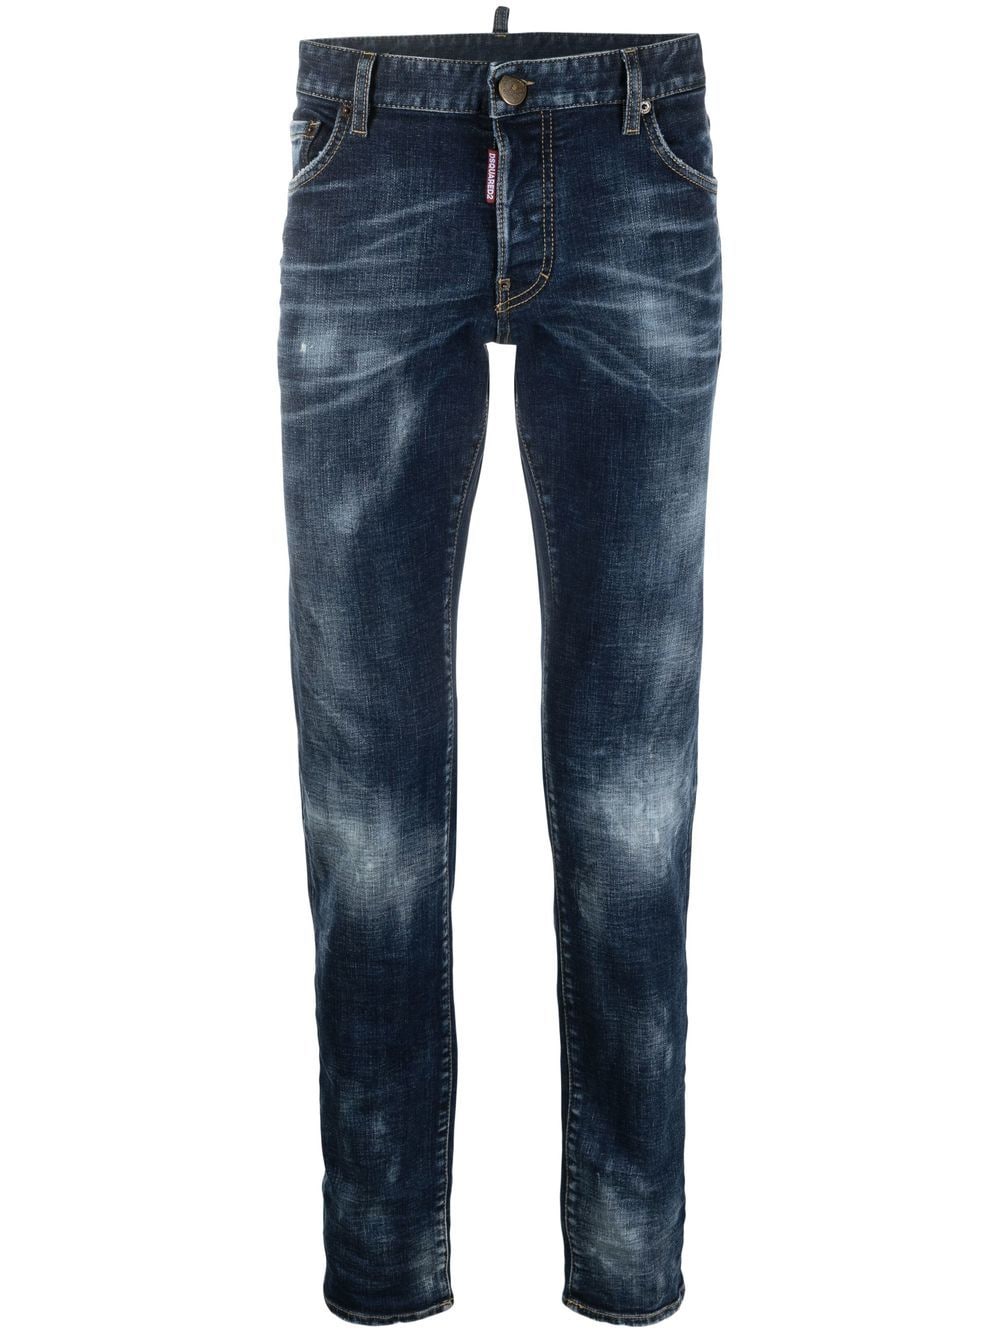 DSQUARED2 Distressed Indigo Jeans - Slim-Fit 5 Pocket Pants for Men